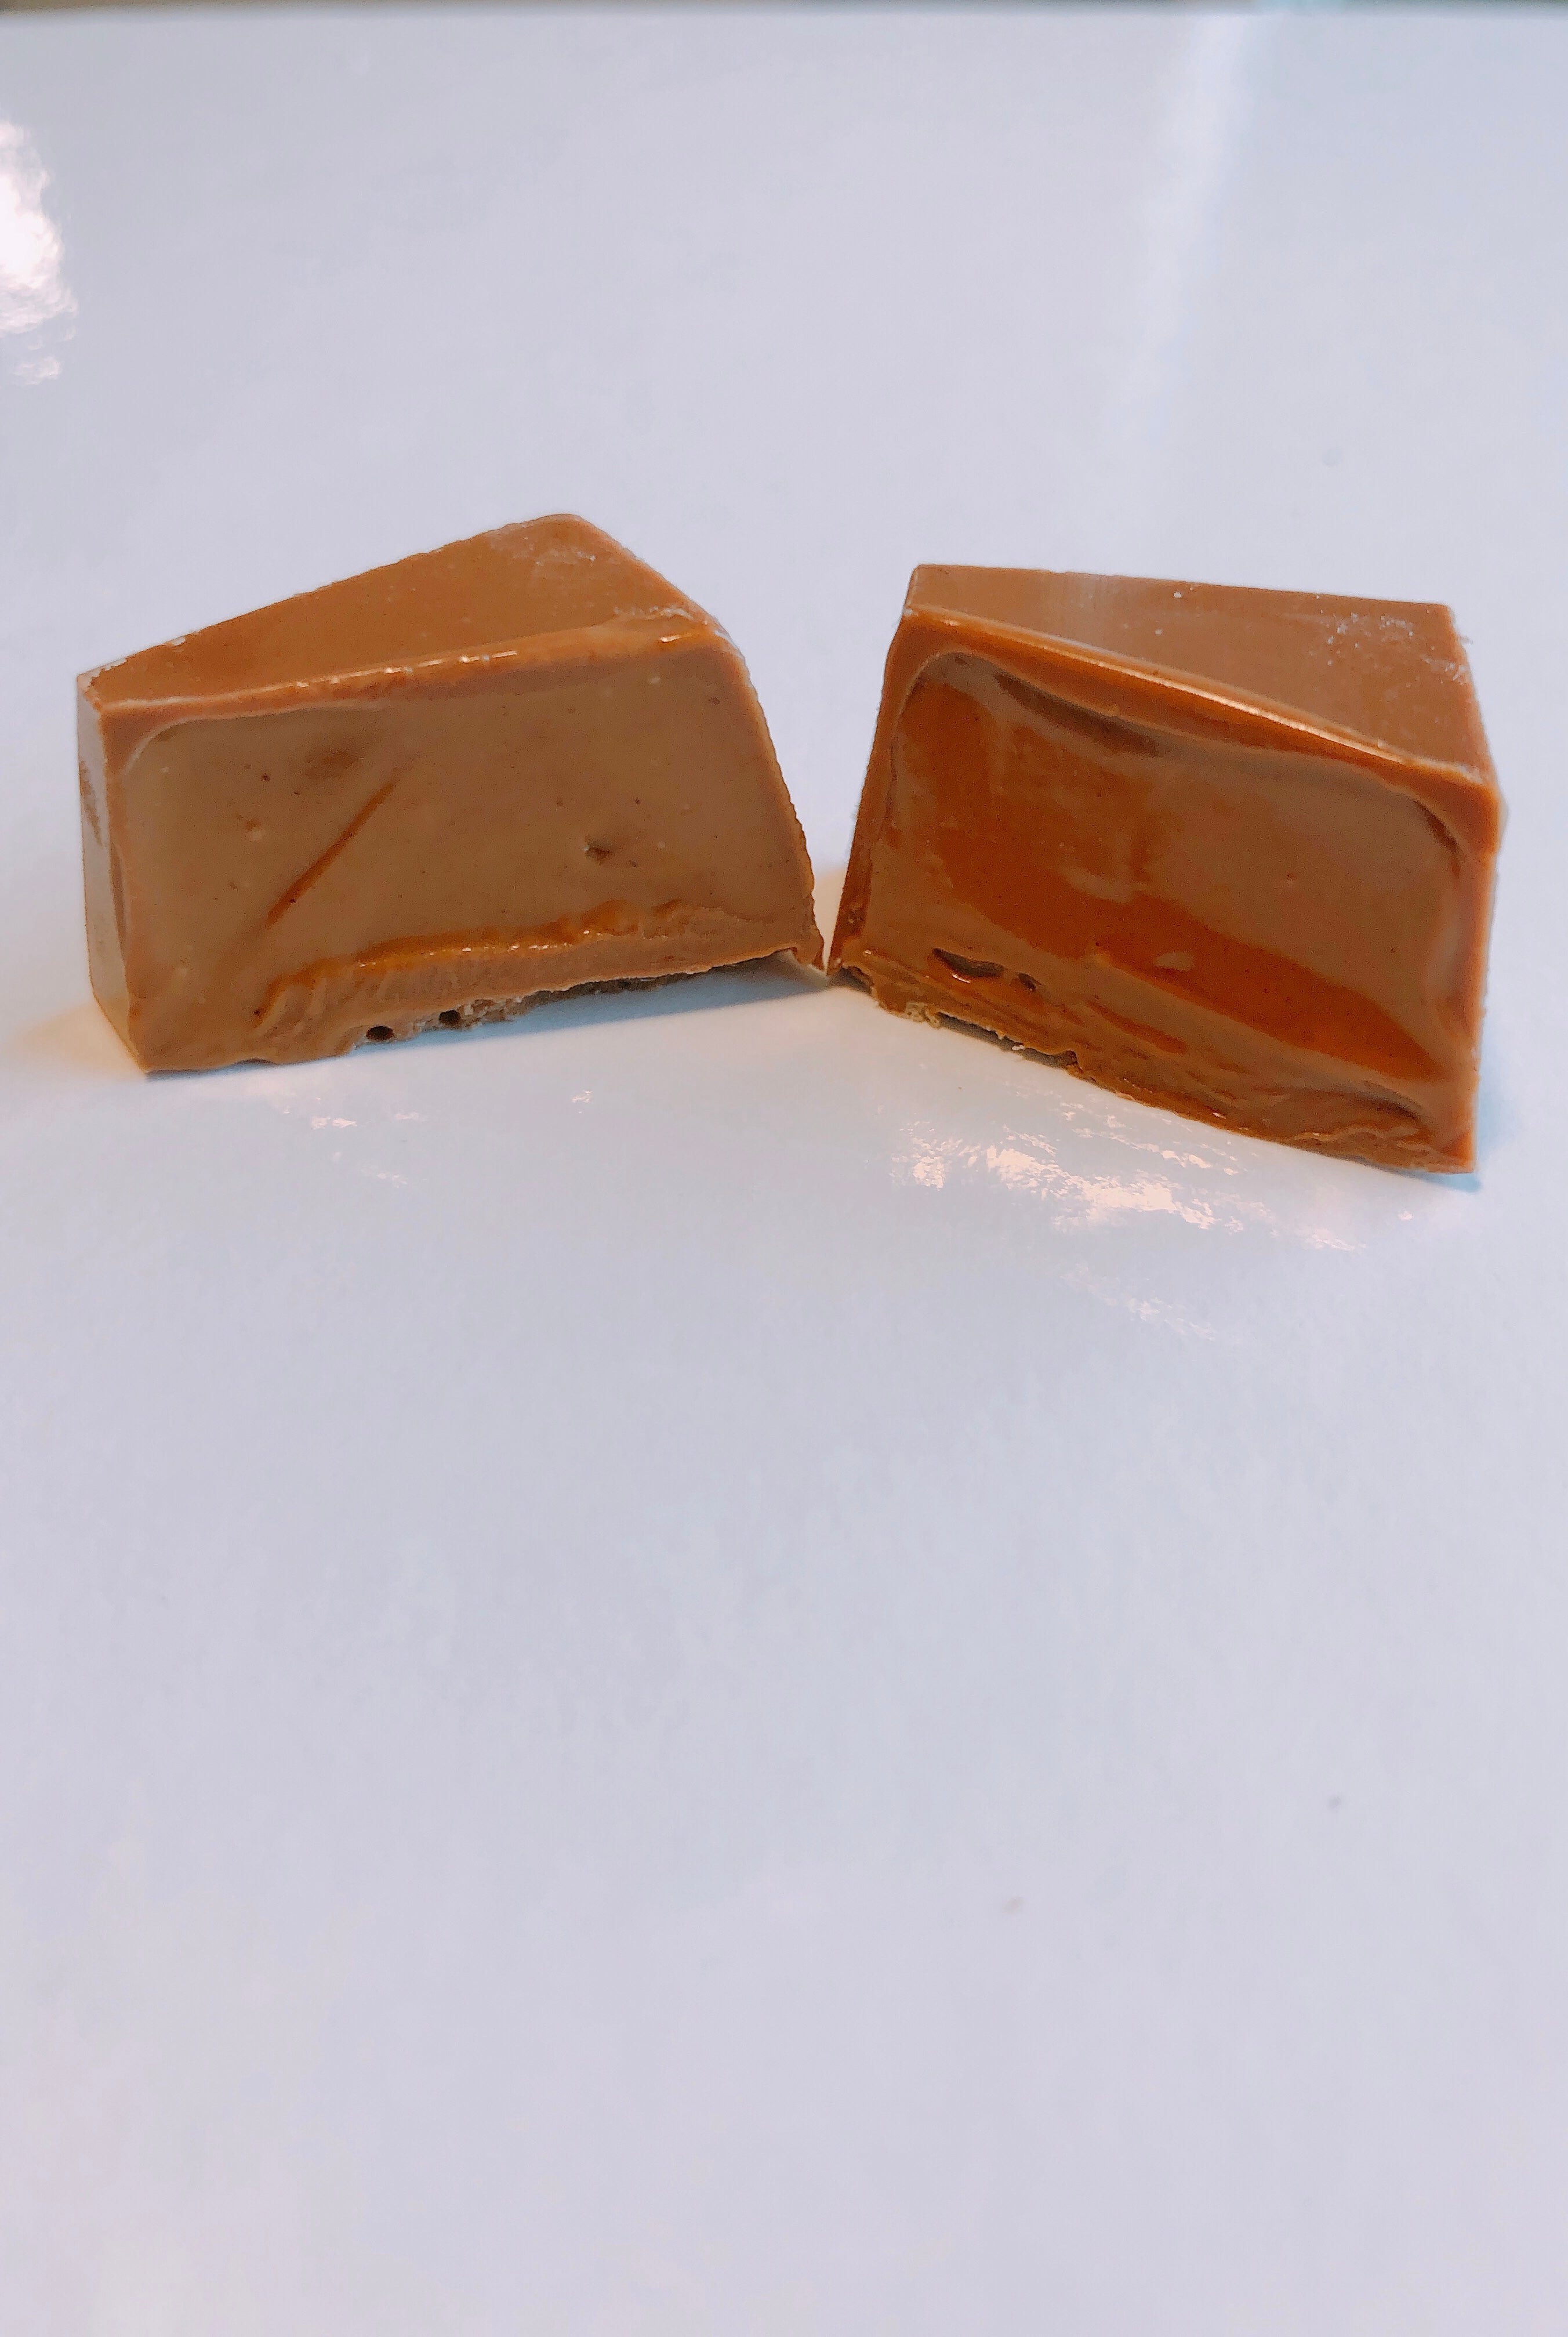 VOORDEEL PACK logo pralines melk chocolade - 846 stuks (= 3x doos van 282 stuks)